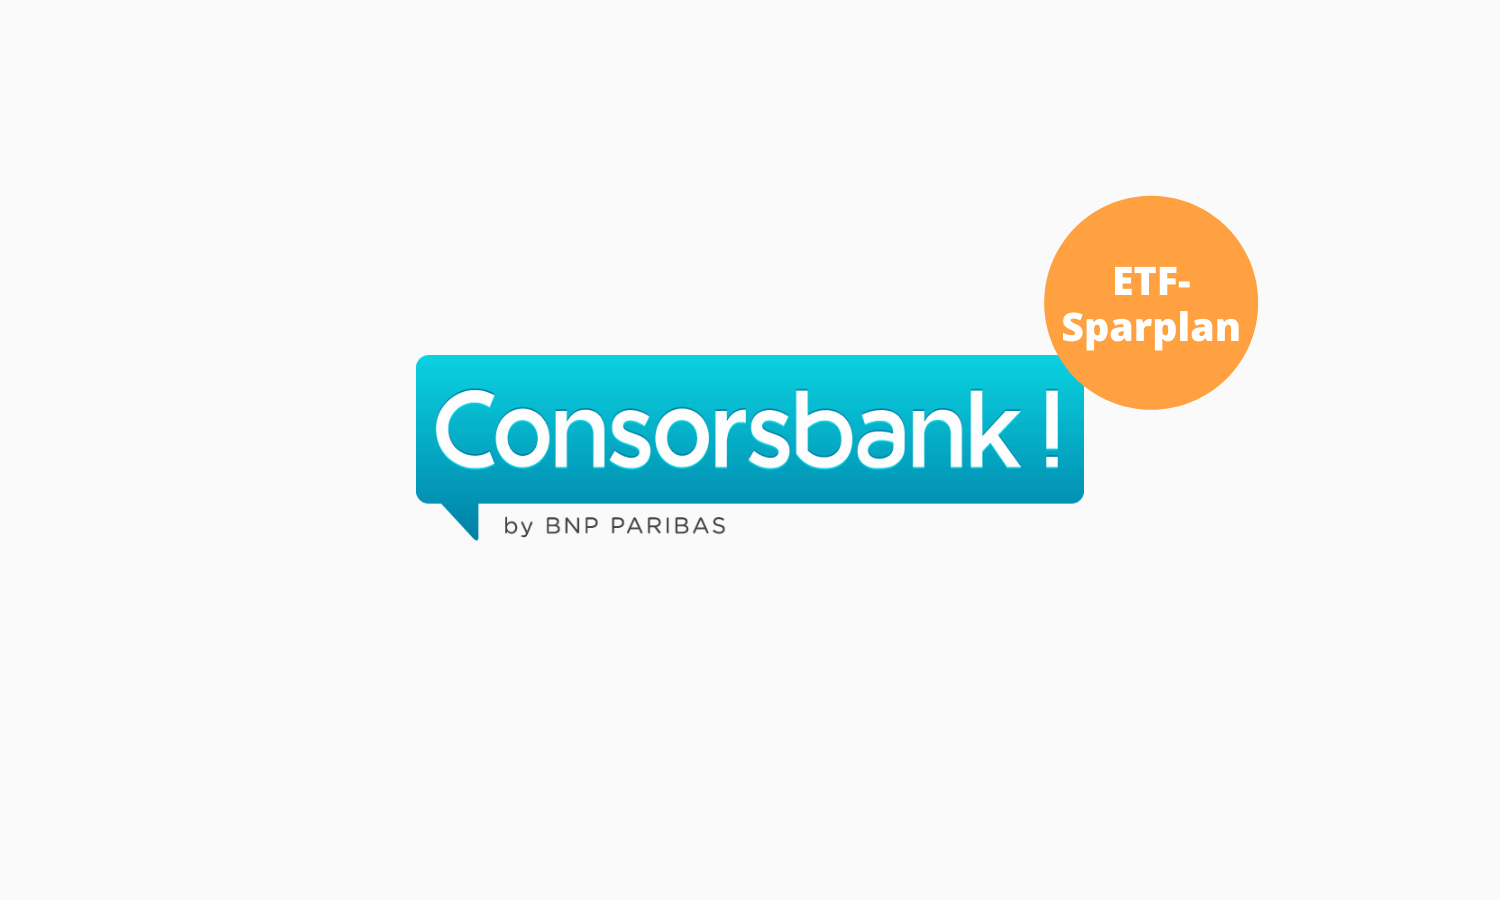 Consorsbank Etf Sparplan Erfahrungen